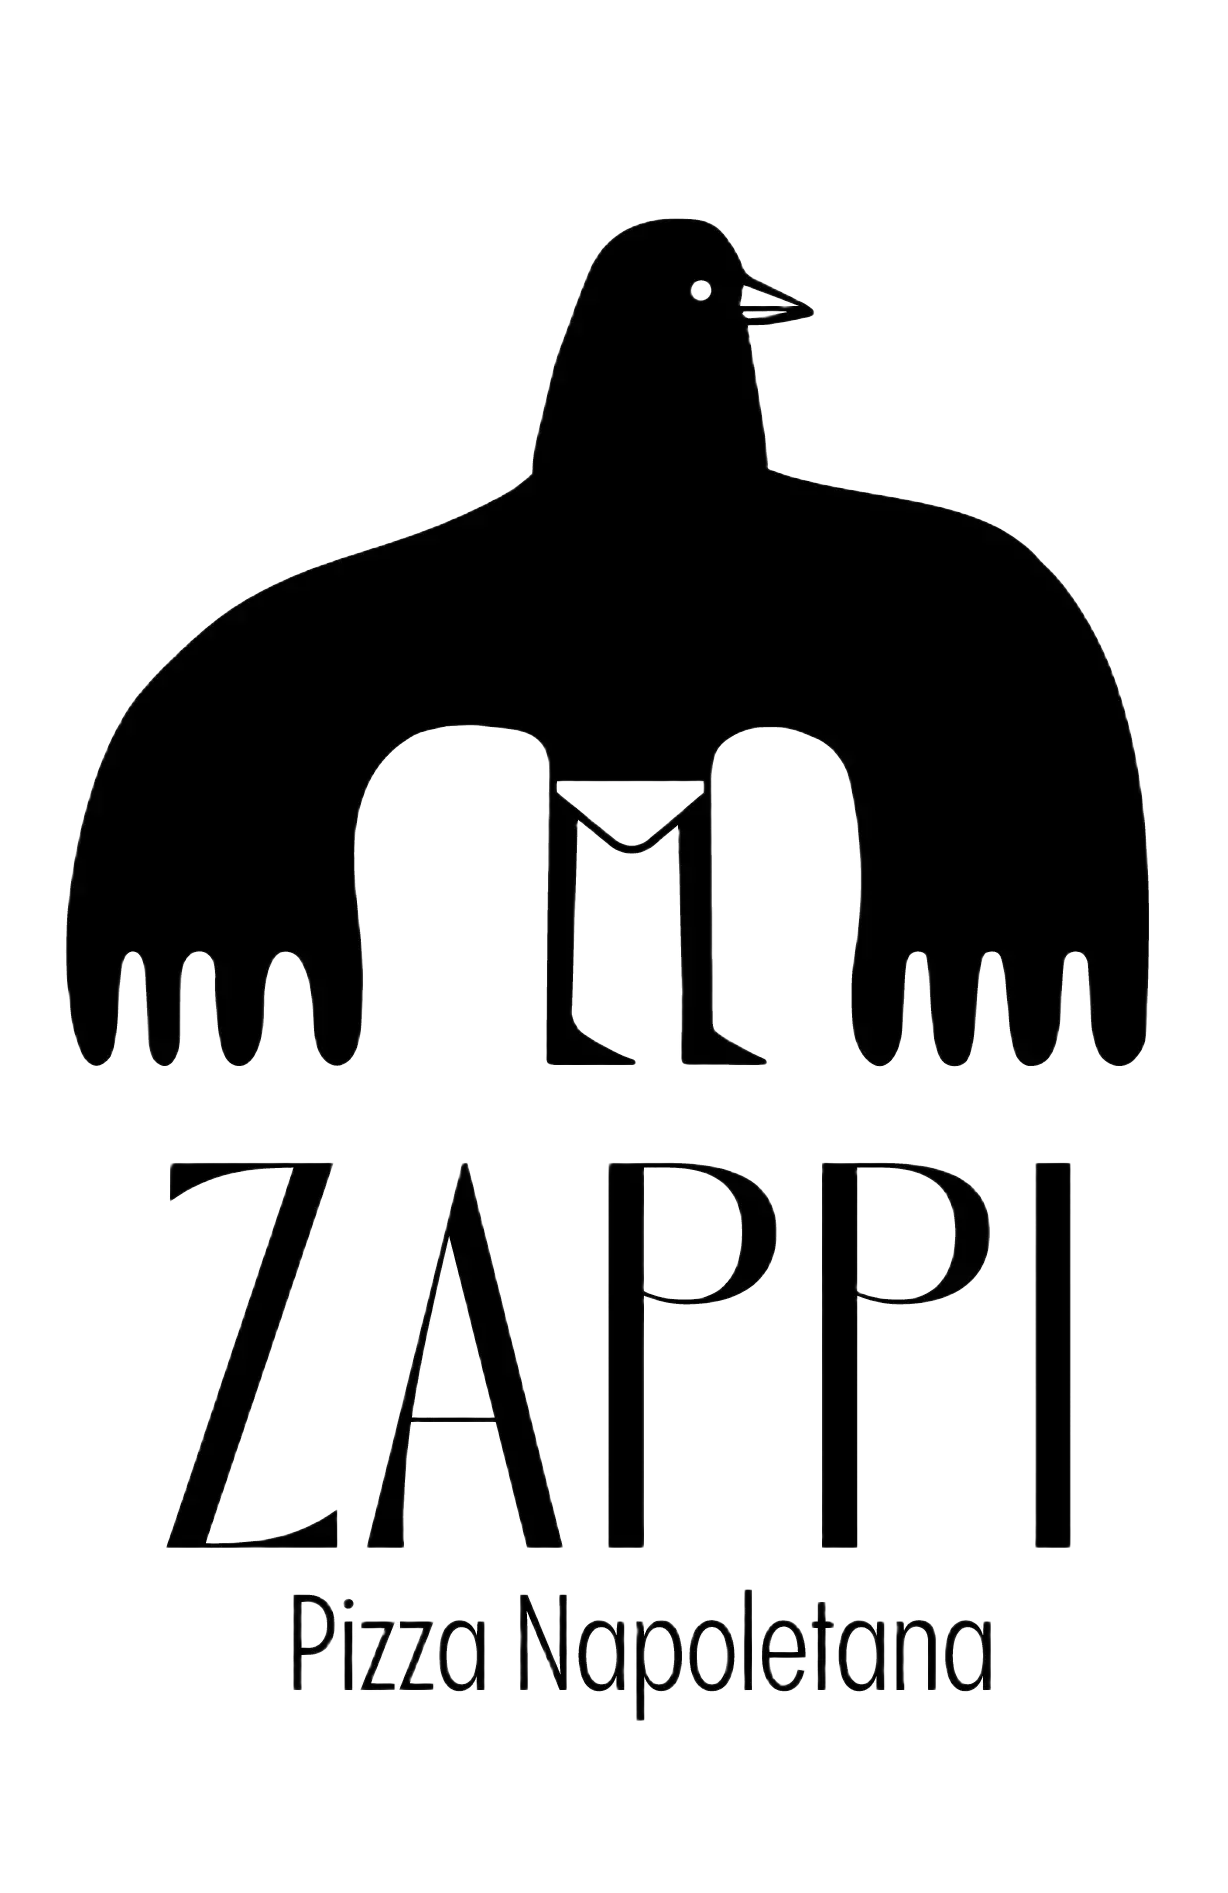 Zappi Napoletana Logo